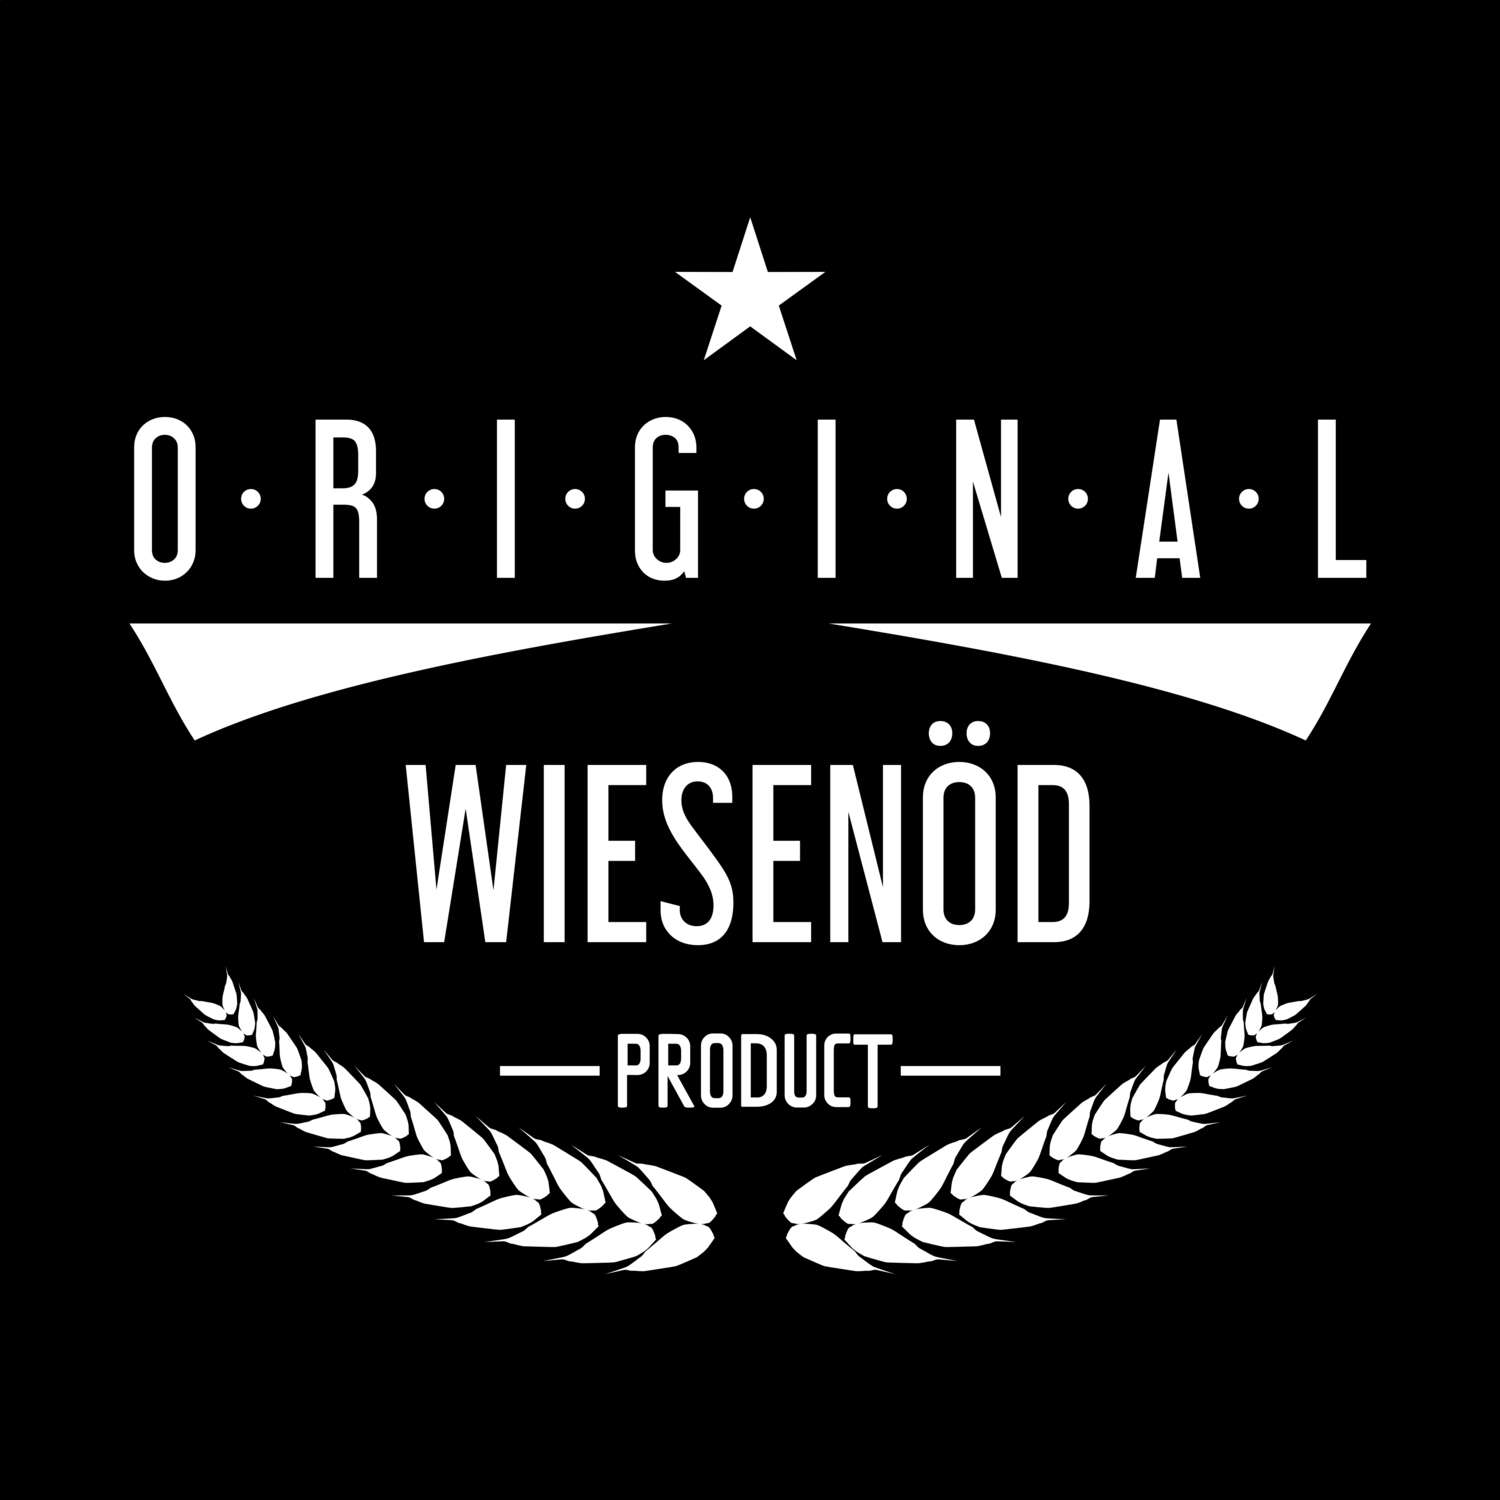 Wiesenöd T-Shirt »Original Product«